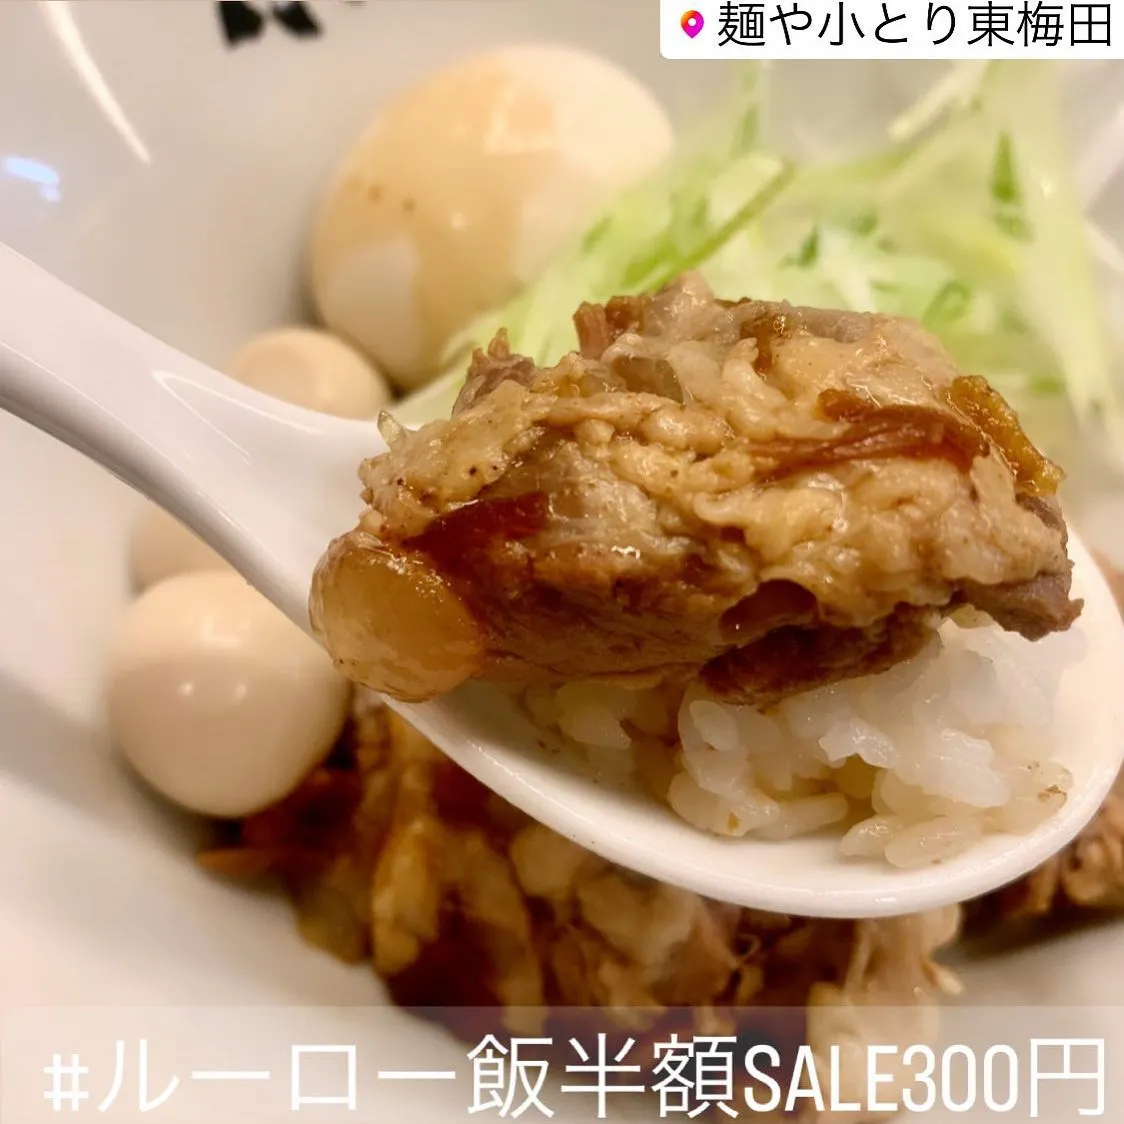 🍖 #ルーロー飯半額sale300円 🍚